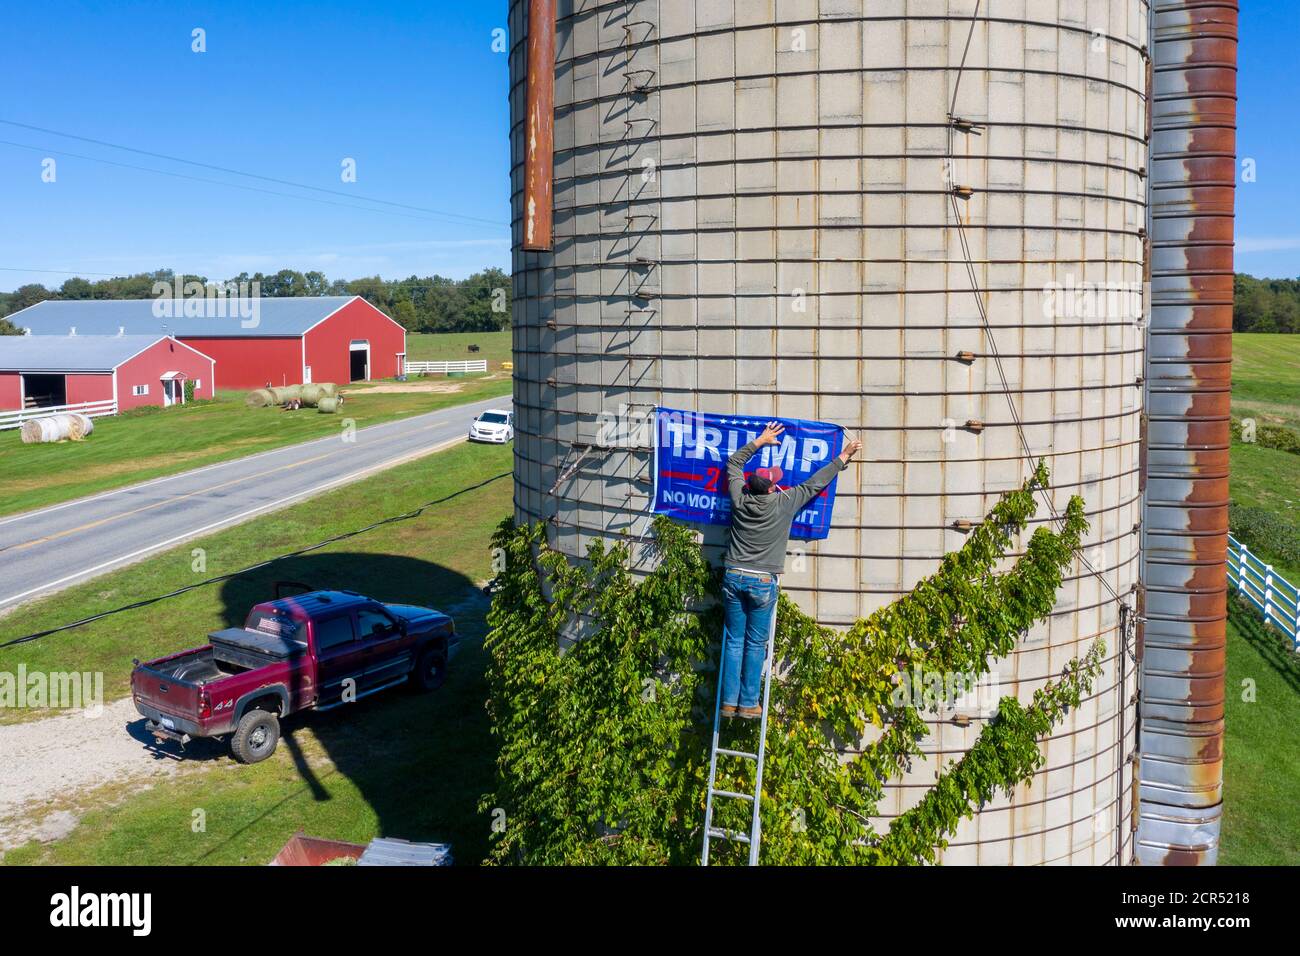 Middleville, Michigan, EE.UU. 19 de septiembre de 2020. Broc Reaser cuelga una bandera de Trump en el silo del agricultor John Seeber. Seeber dijo que quería la bandera en lo alto del silo porque alguien había robado varios de sus signos de césped de Trump. Crédito: Jim West/Alamy Live News Foto de stock